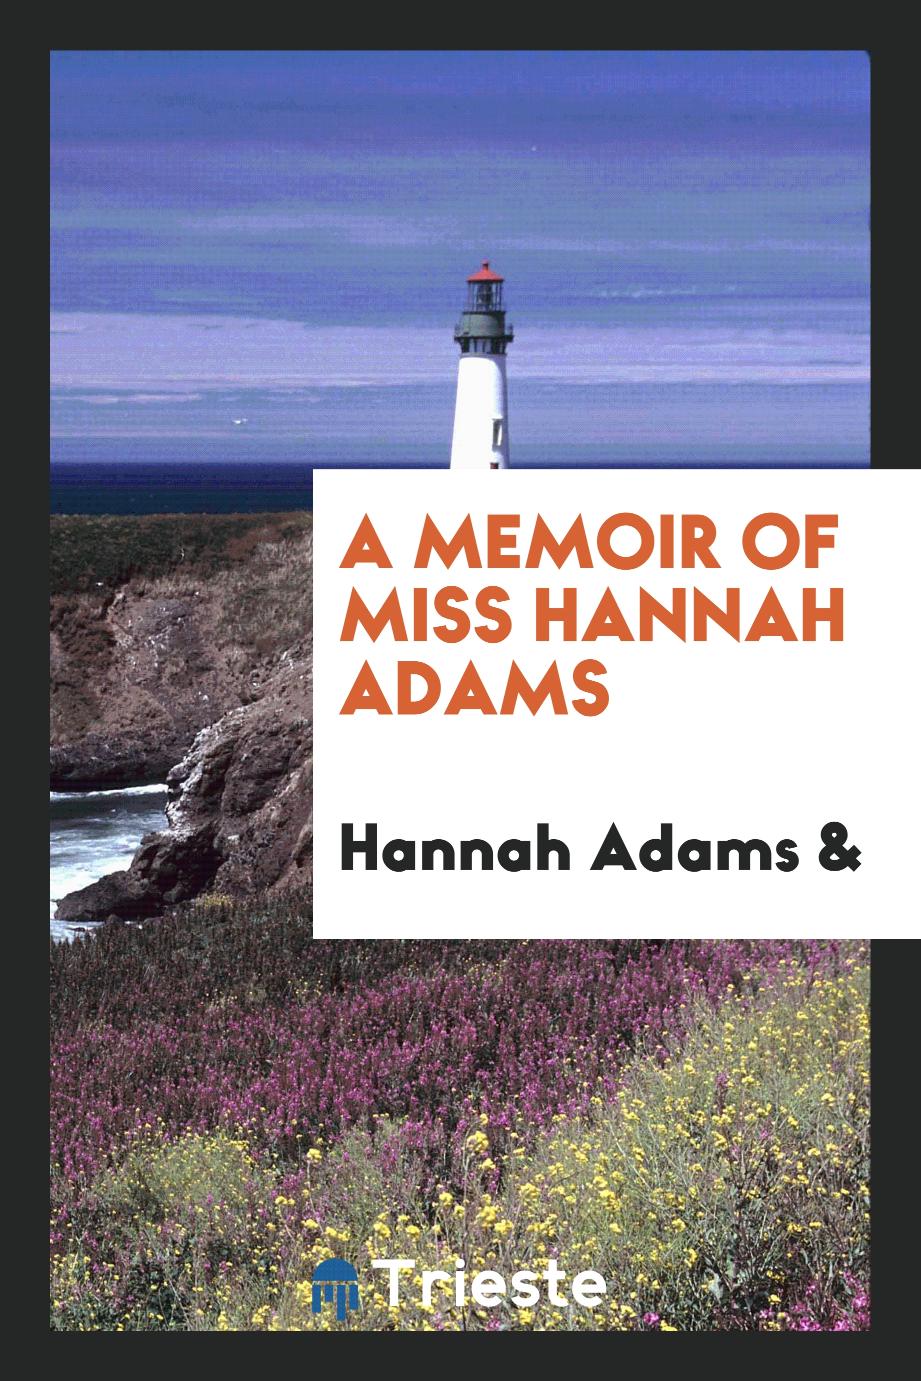 A memoir of Miss Hannah Adams